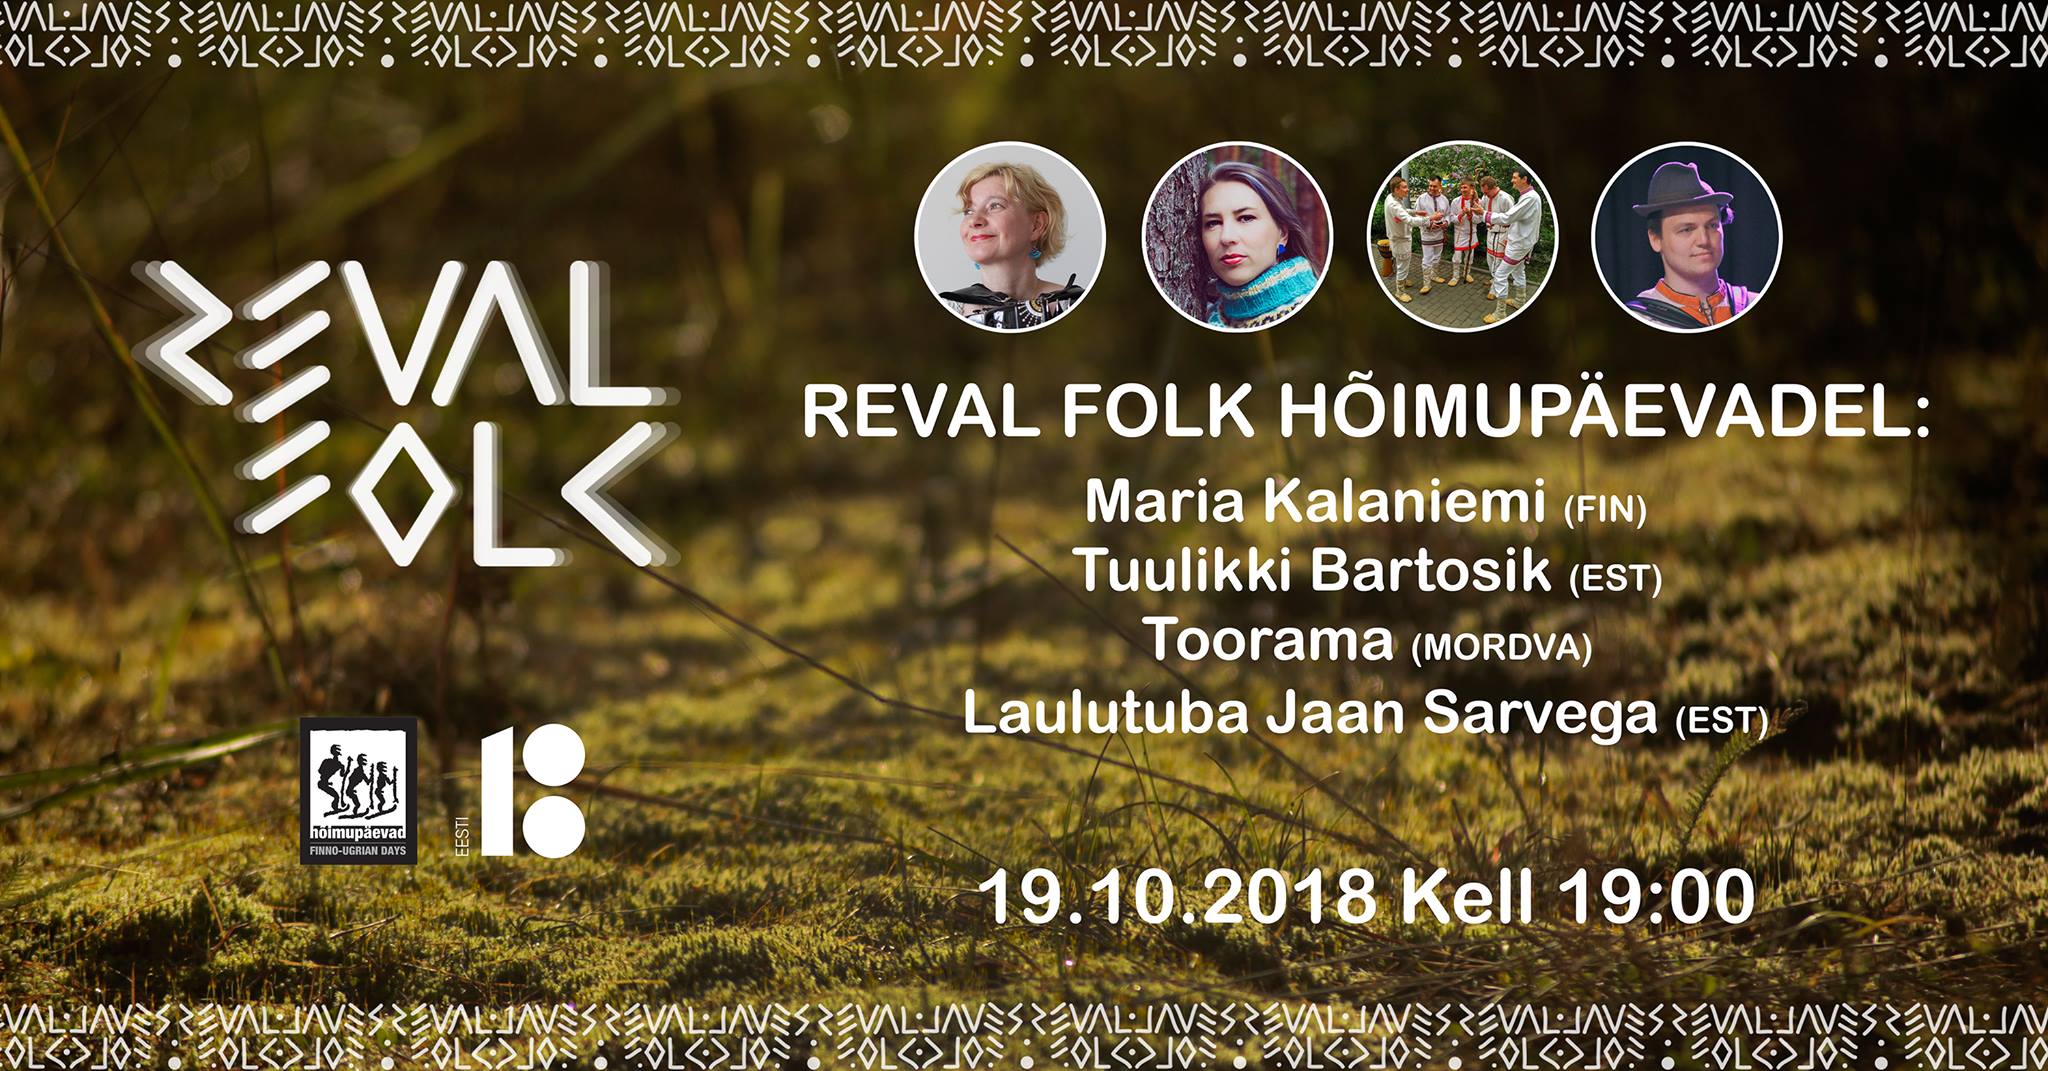 Reval Folk Hõimupäevadel: Kalaniemi, Bartosik, Toorama, Sarv